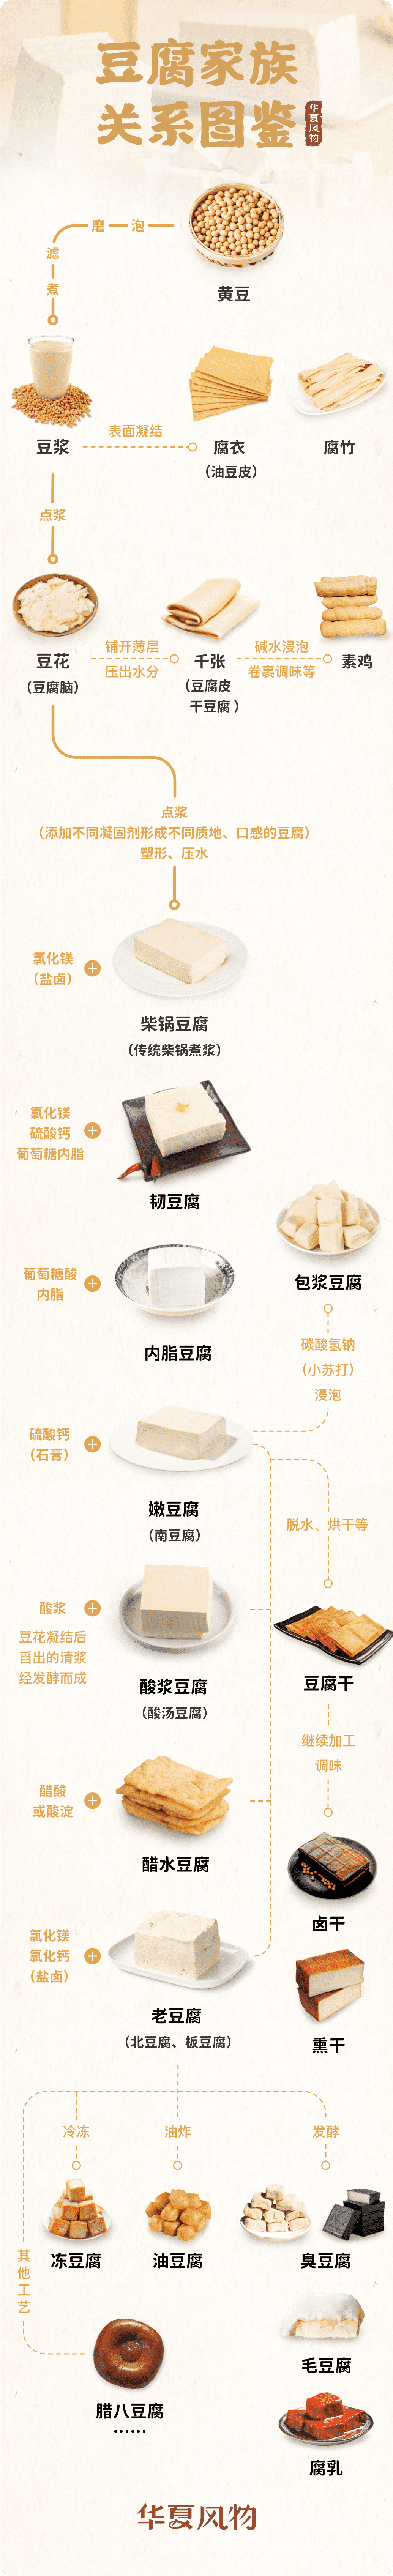 黄豆腐家族关系一览图 ©华夏风物